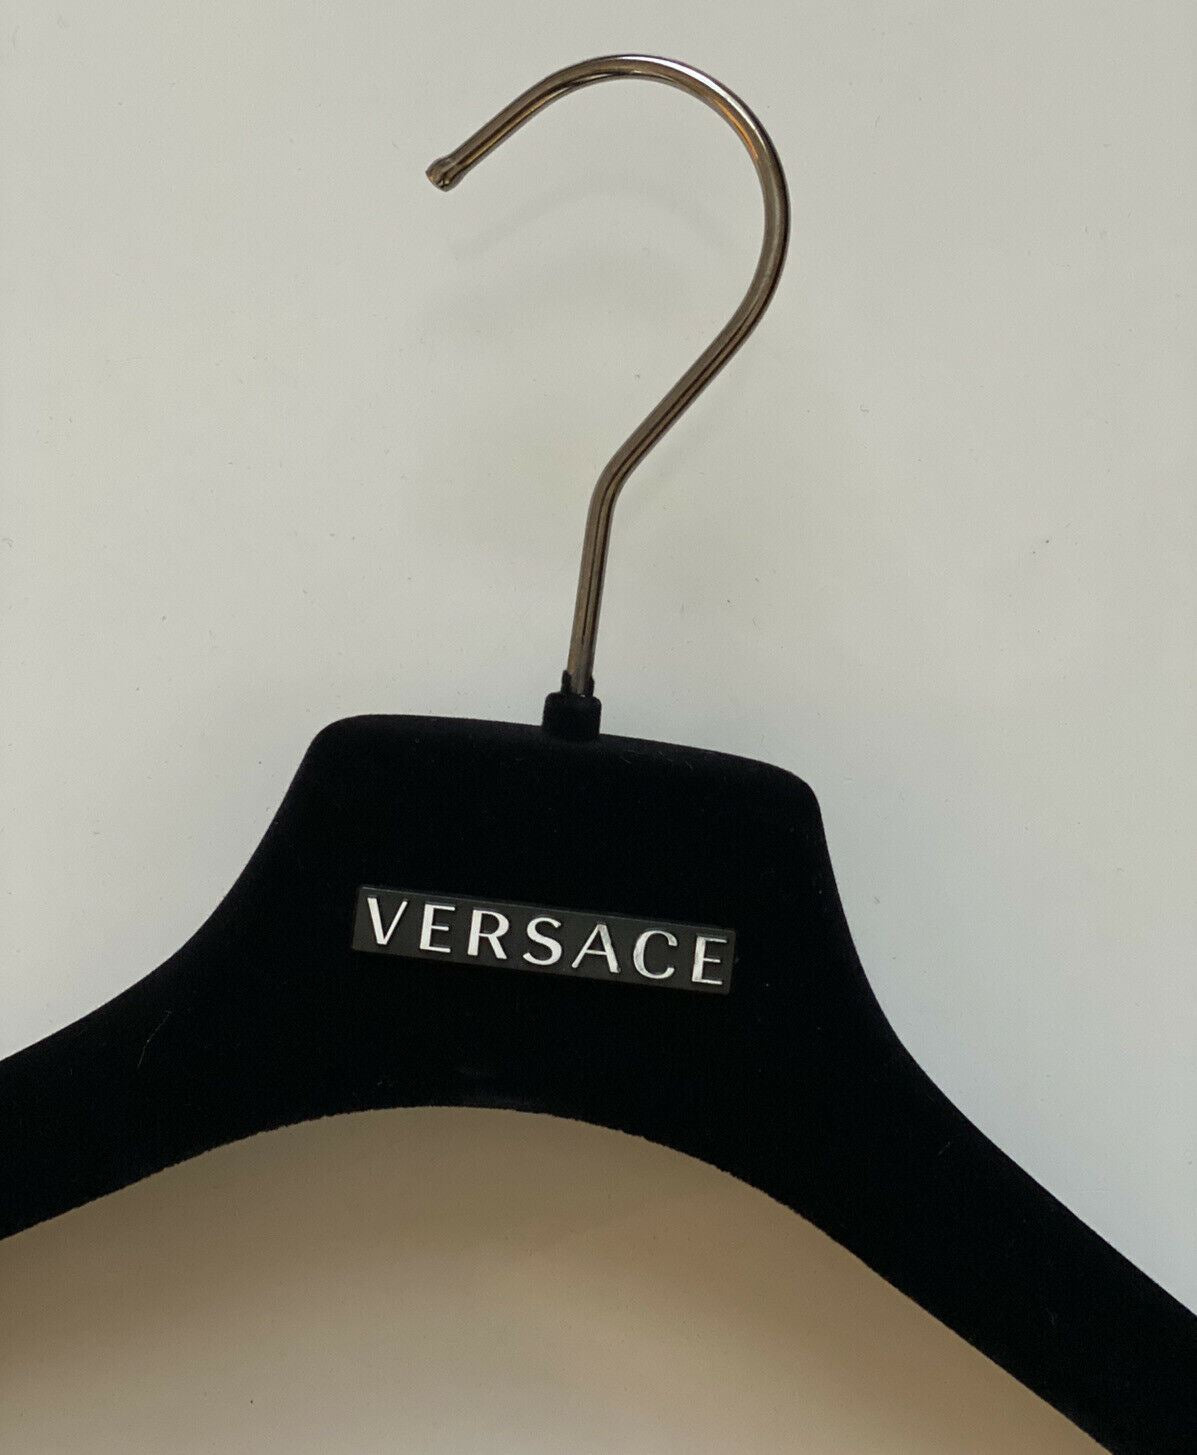 VERSACE Black Velvet Blazer Coat Suit Hangers with Silver Hardware 17.5x6.75